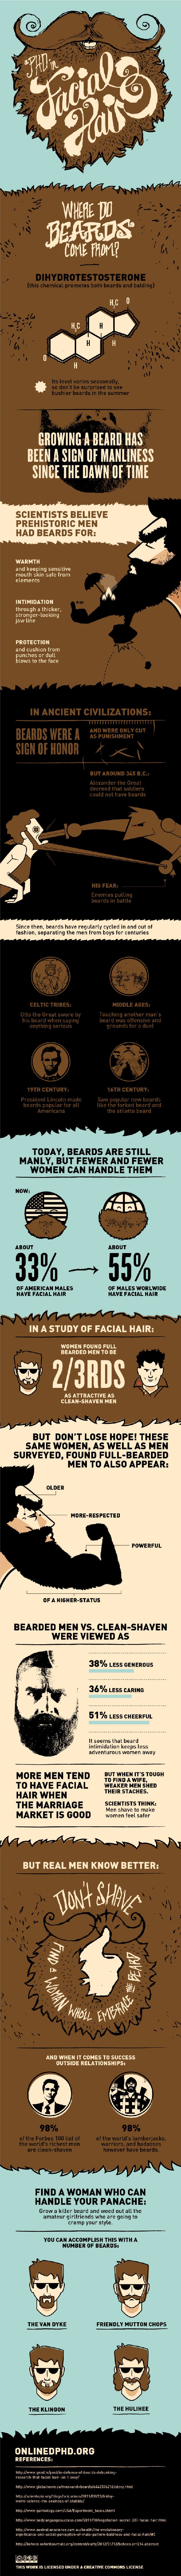 Beards-Facial-Hair-Stats-Infographic